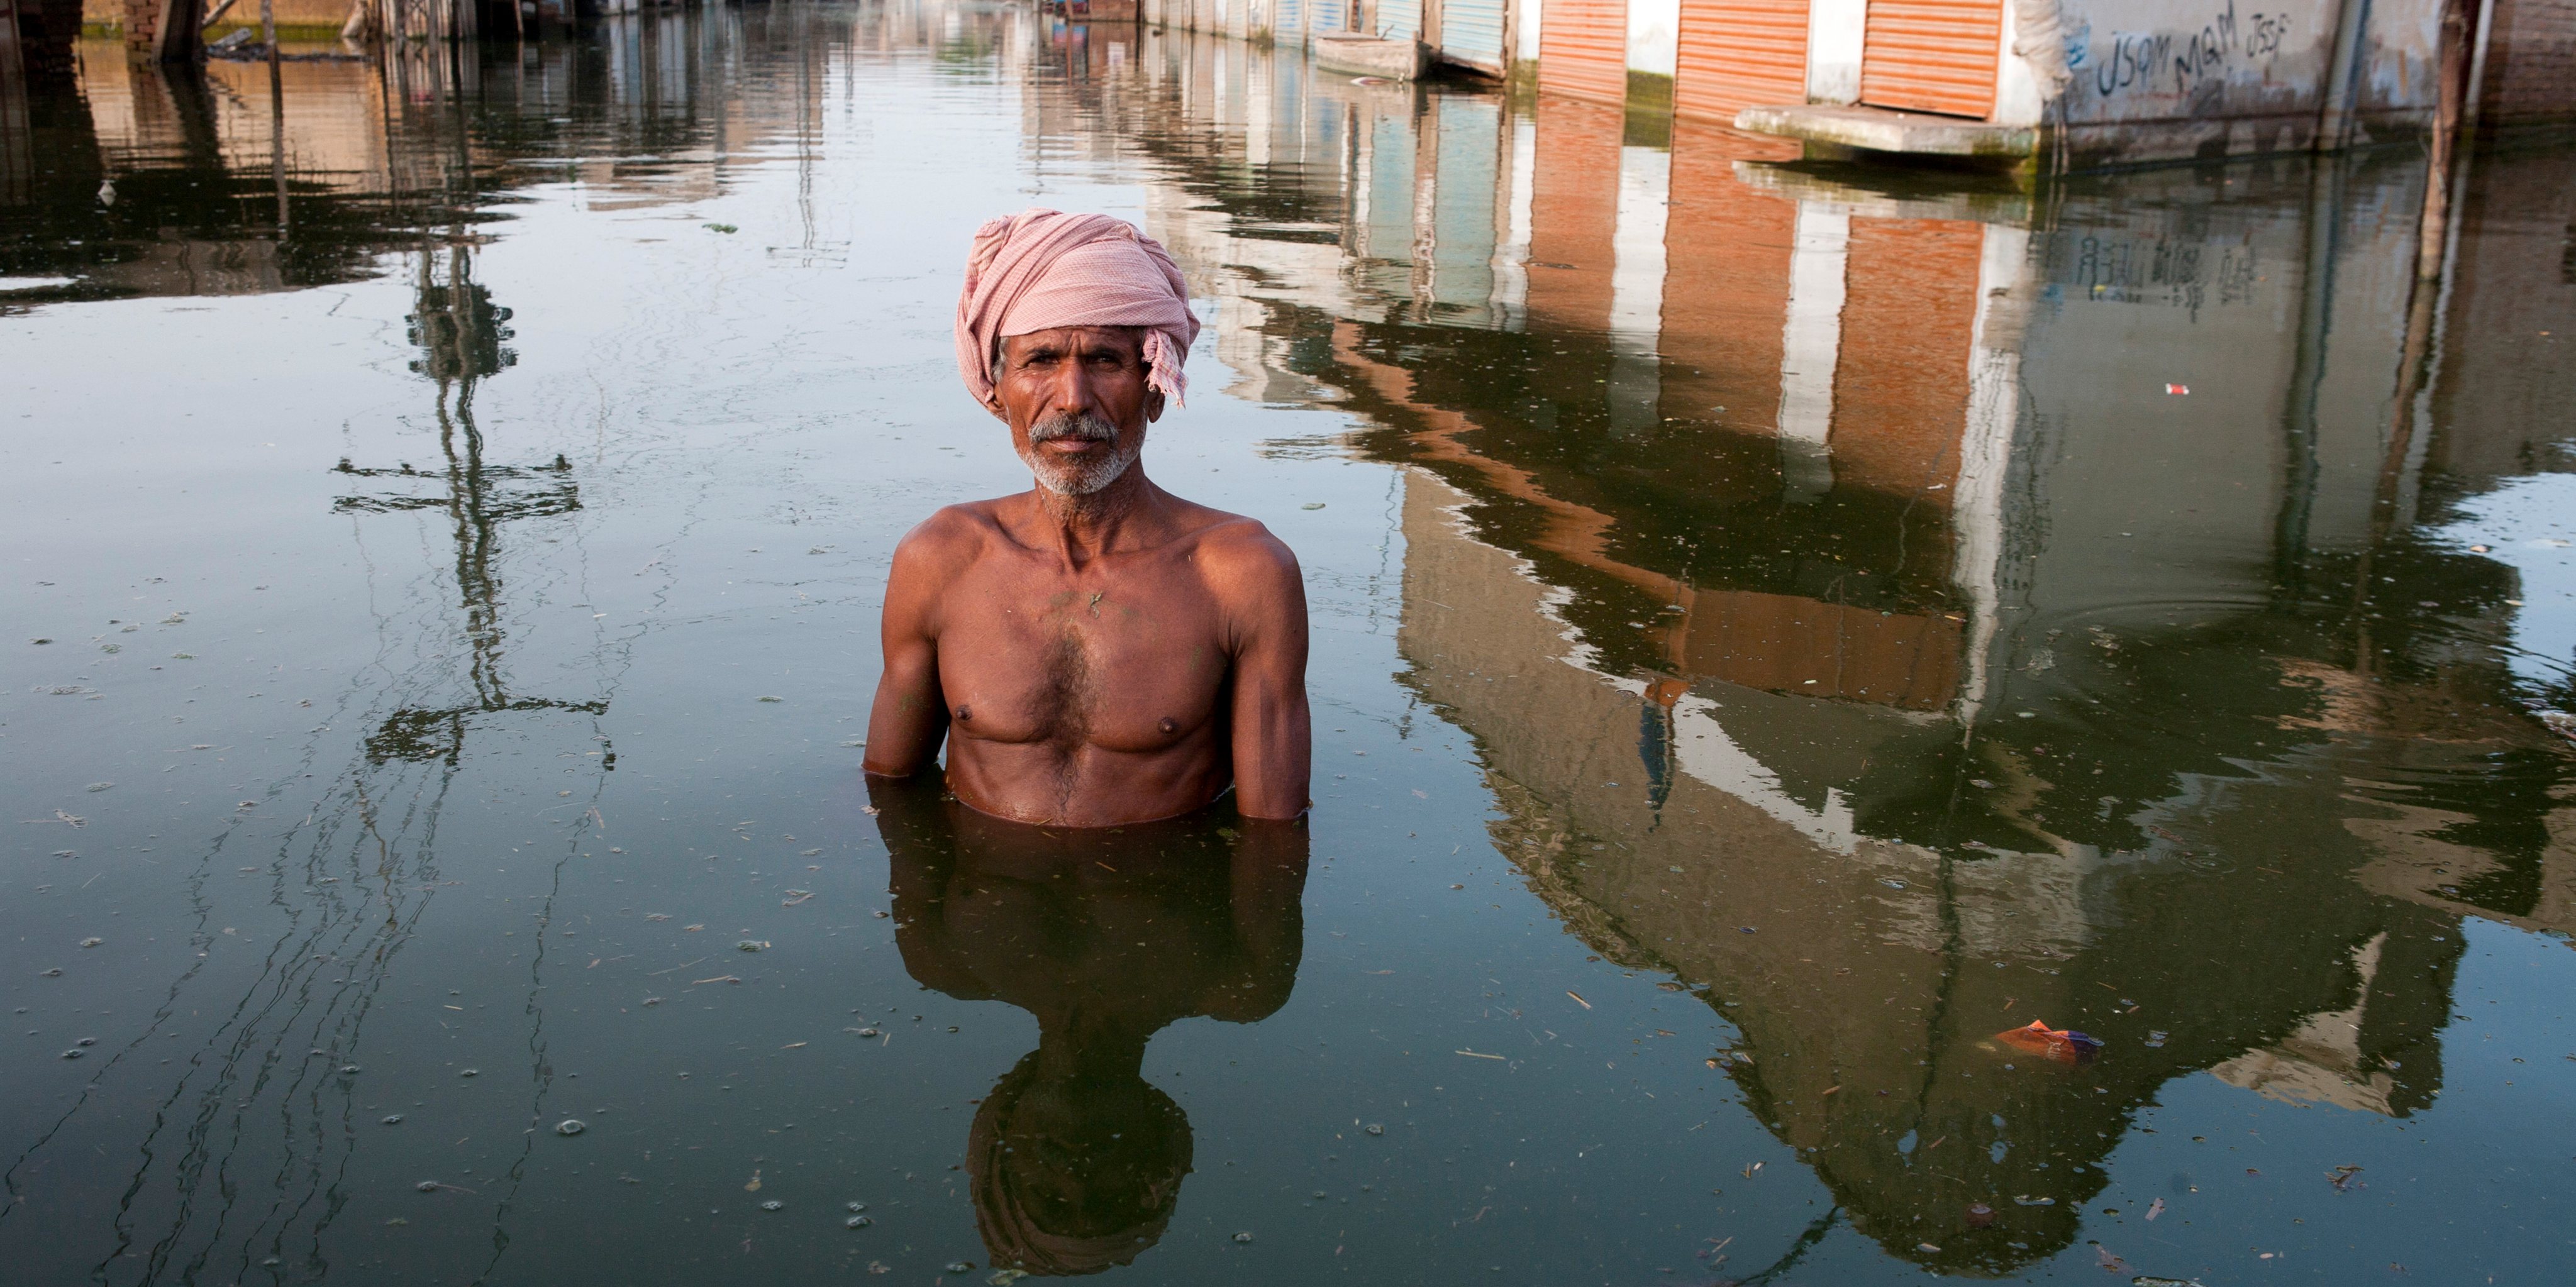 Pakistan - Floods - Portrait in floodwaters